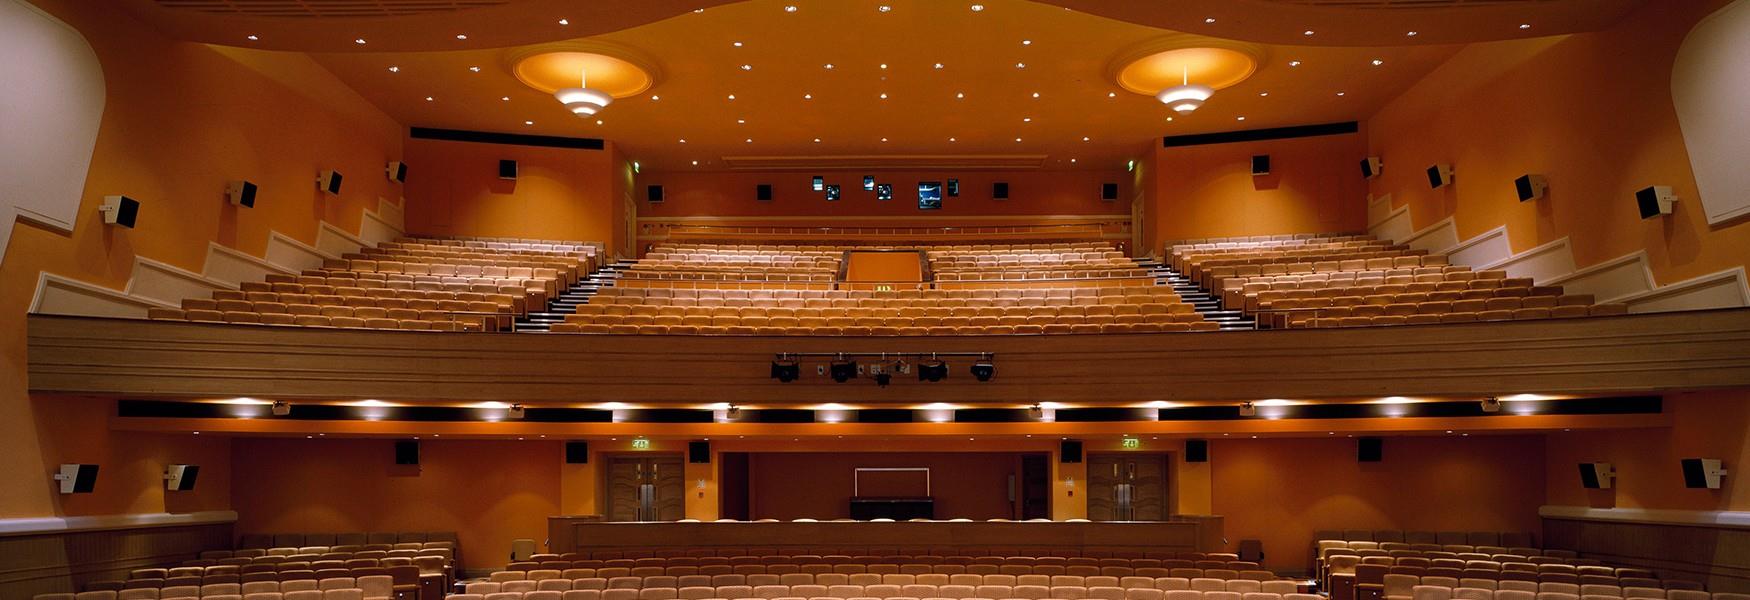 An interior image of the Peterborough New Theatre auditorium.